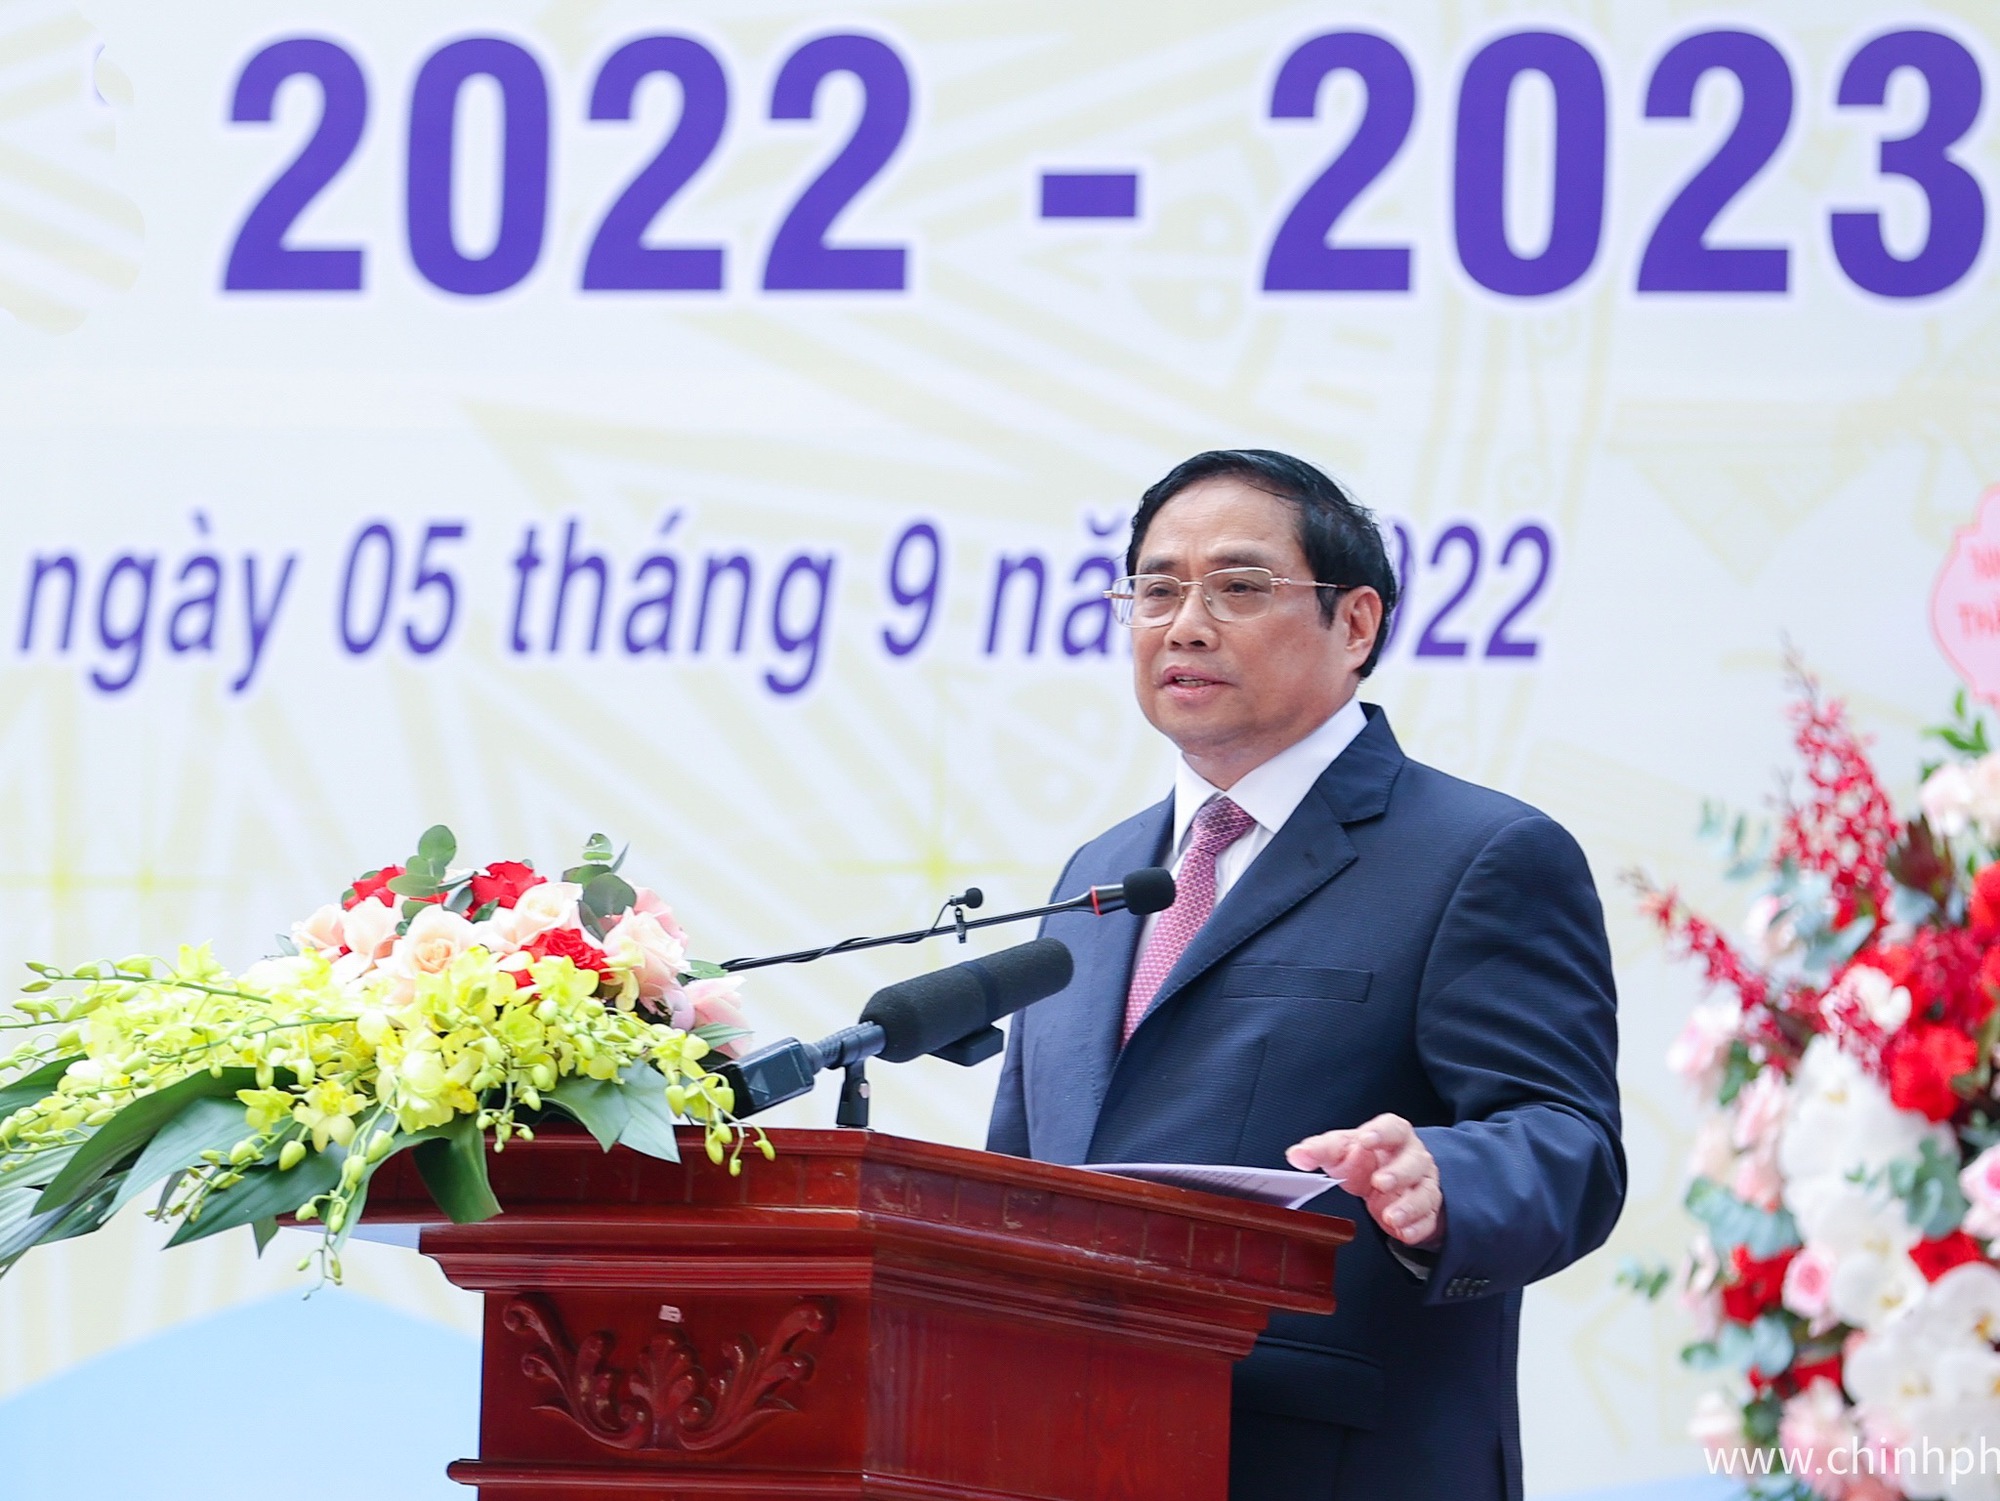 Toàn văn bài Phát biểu của Thủ tướng Chính phủ Phạm Minh Chính tại Lễ khai giảng năm học 2022-2023 - Ảnh 2.